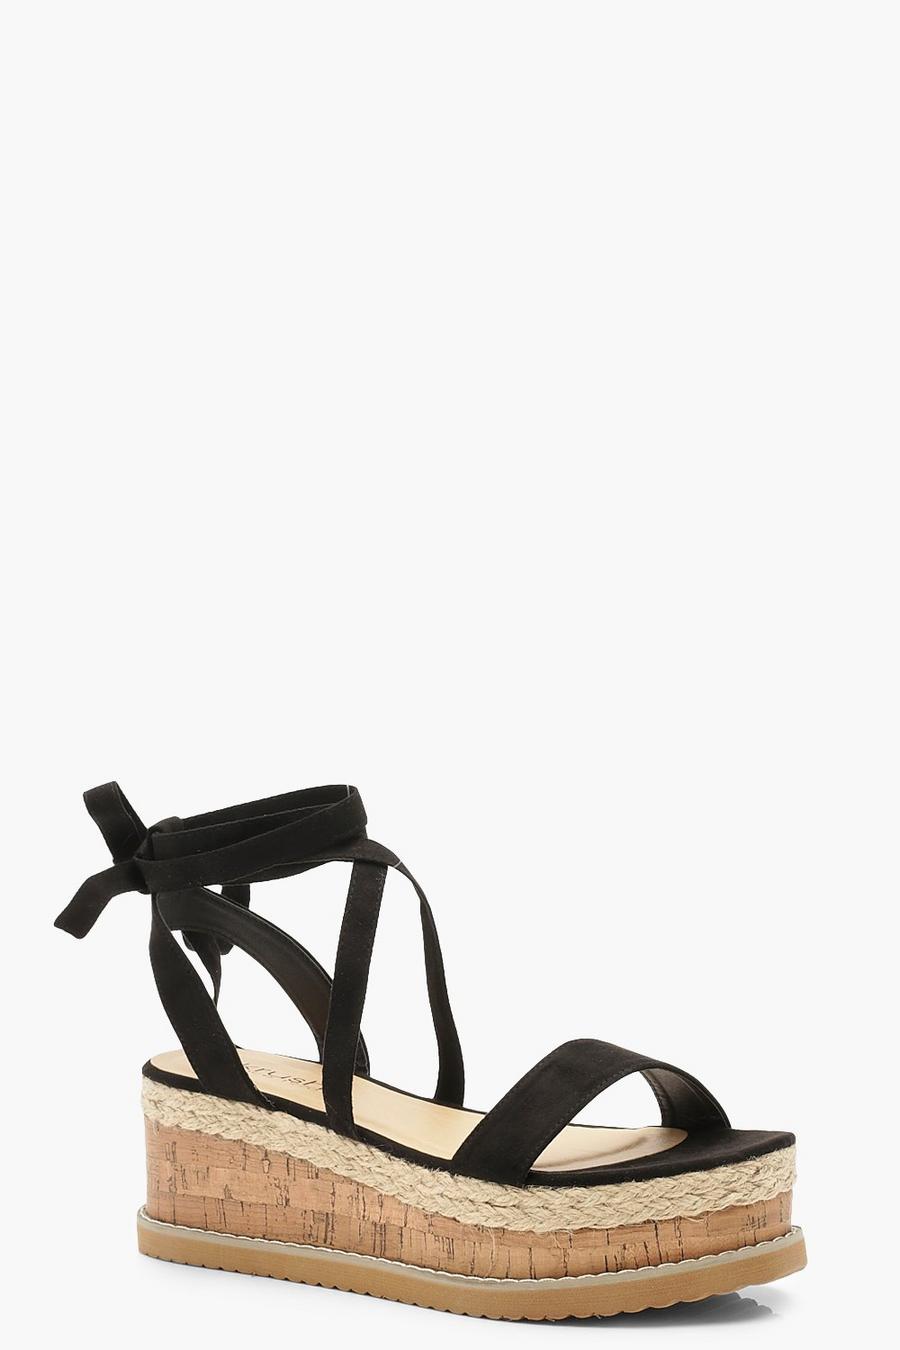 Black Flatform Espadrille Lace Up Sandals image number 1